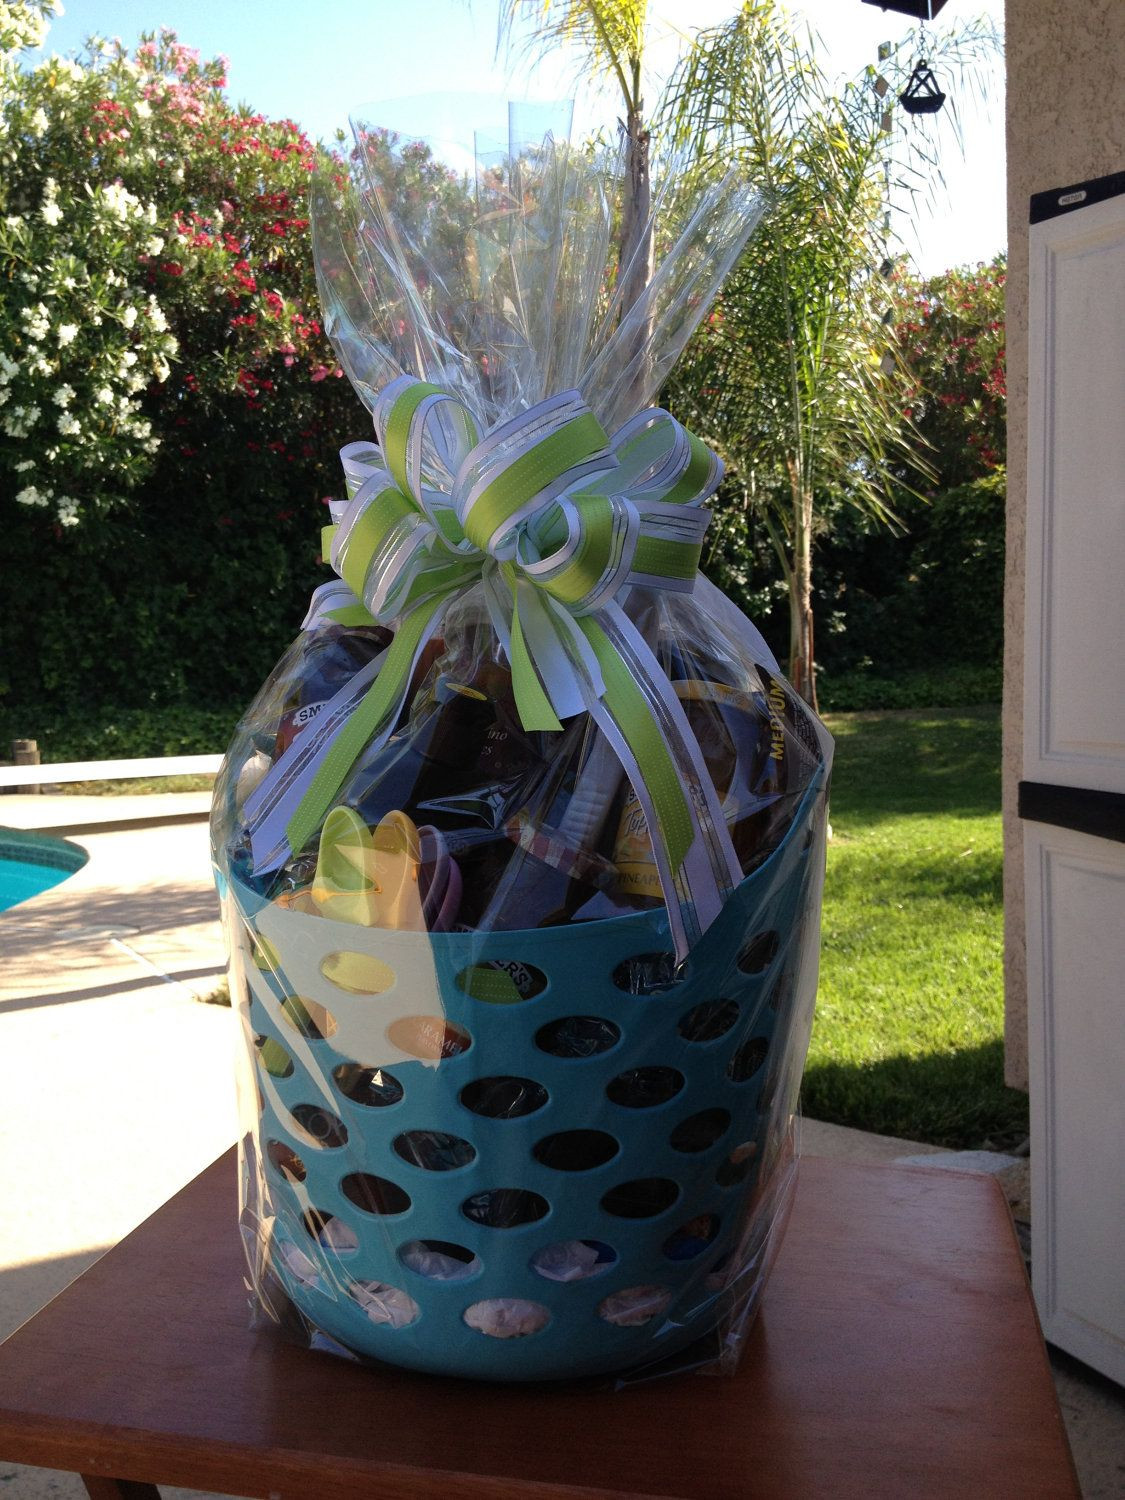 Ice Cream Gift Basket Ideas
 Ice Cream Theme Gift Basket $75 00 via Etsy sundae